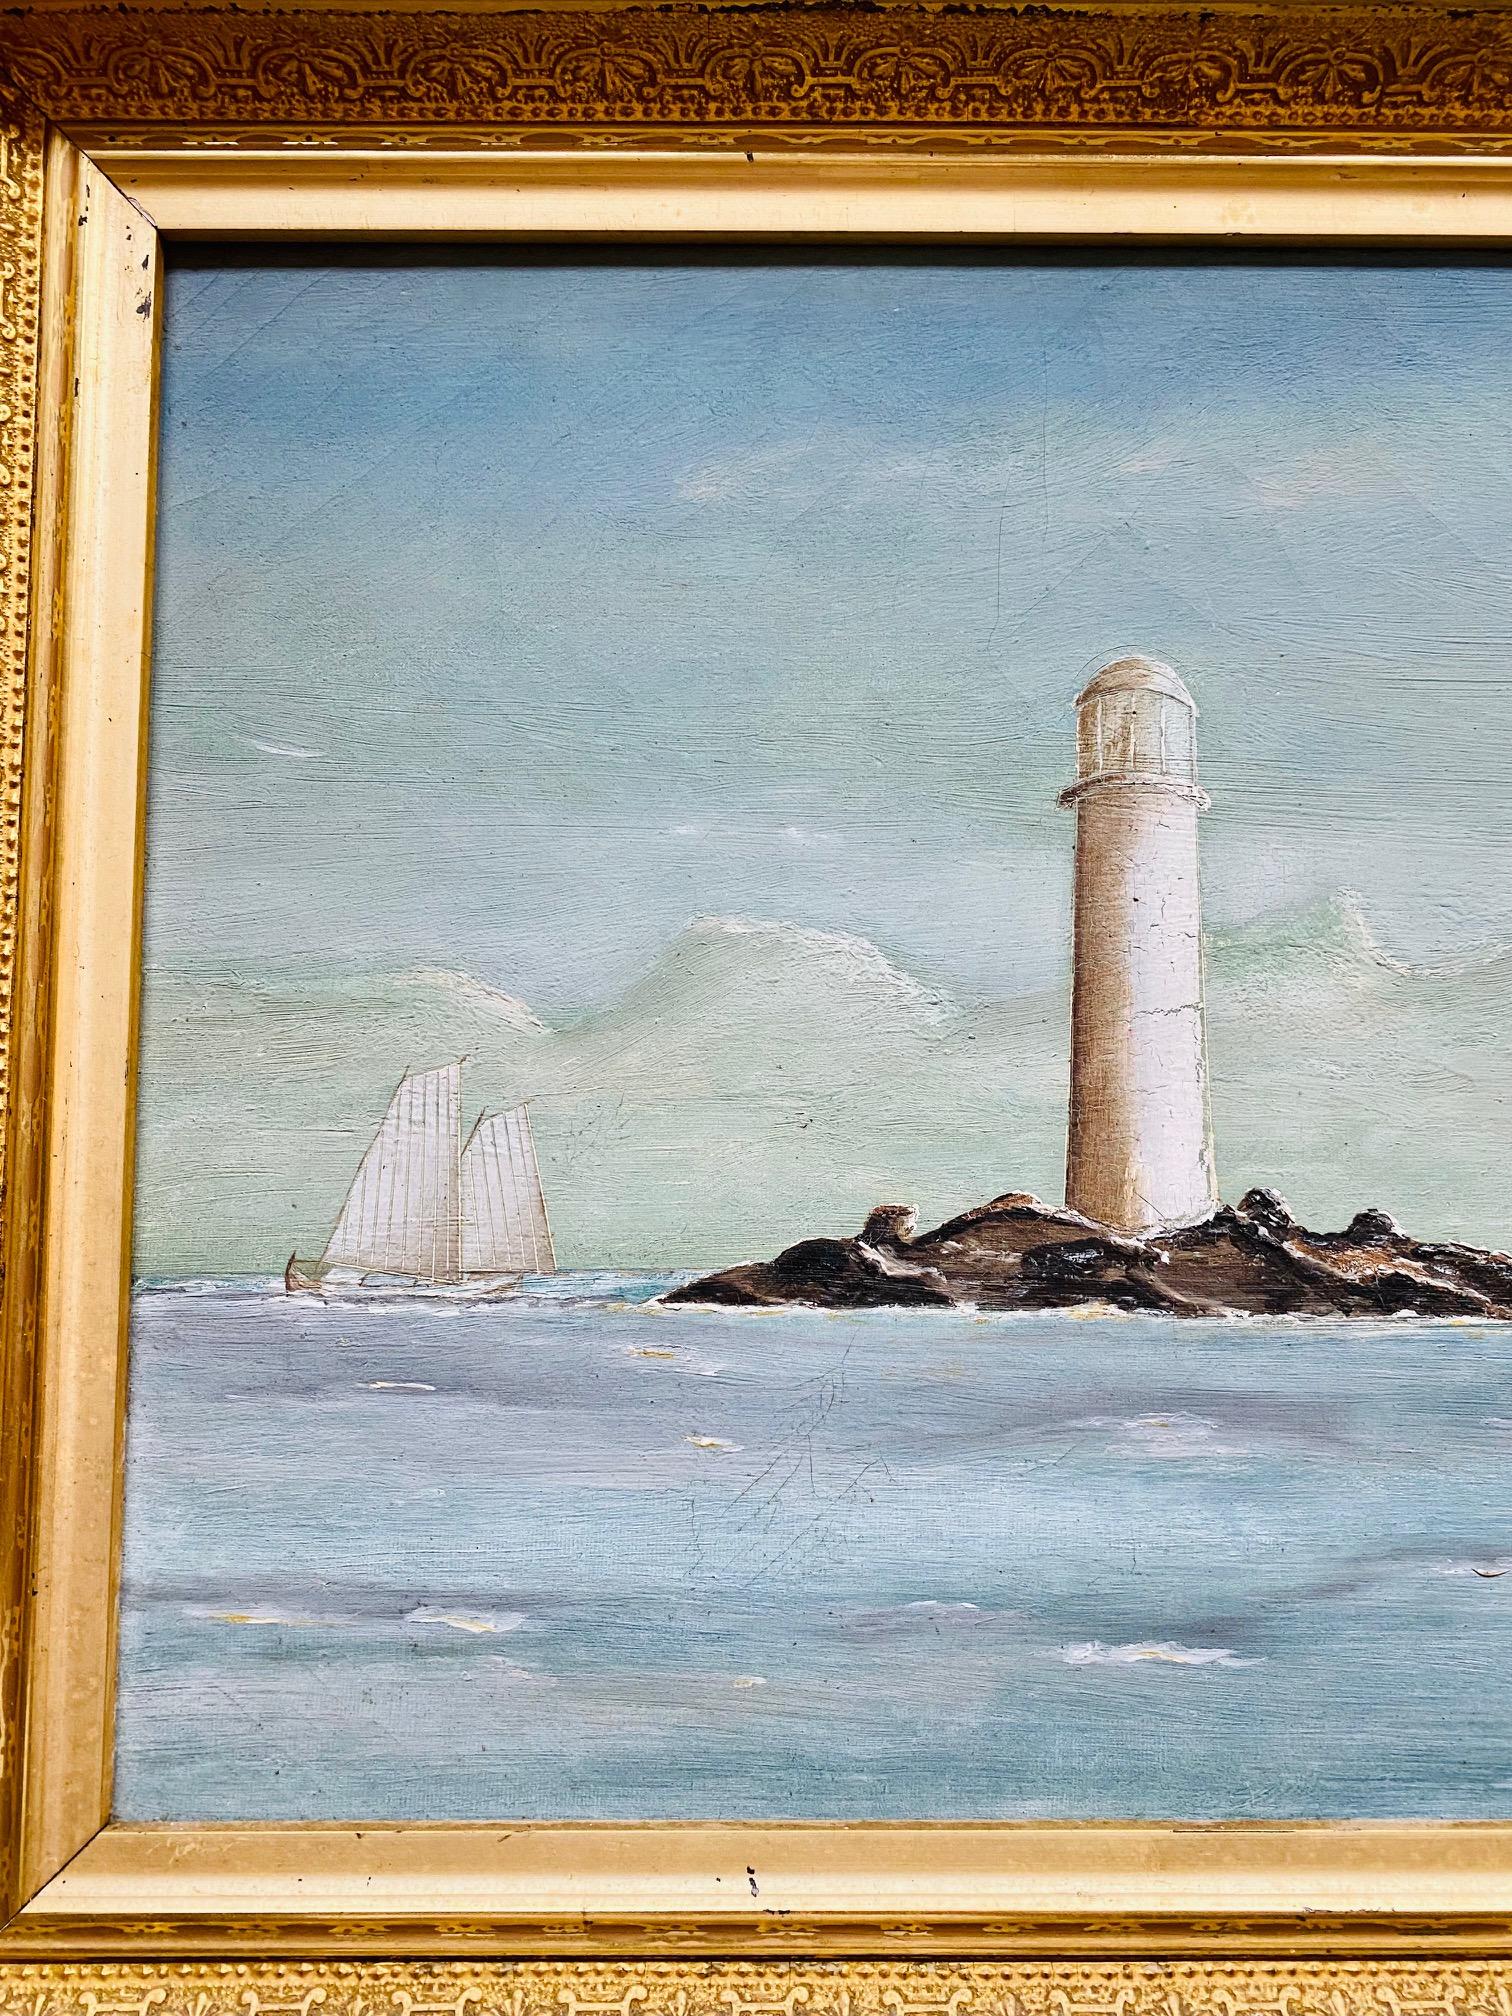 Seelandschaft mit Leuchtturm, 19. Jahrhundert, um 1890, Öl auf Leinwand, Ansicht eines weiß getünchten Leuchtturms auf einem kleinen vorgelagerten Felsvorsprung, wahrscheinlich Minot's Ledge vor der South Shore von Massachusetts (das berühmte